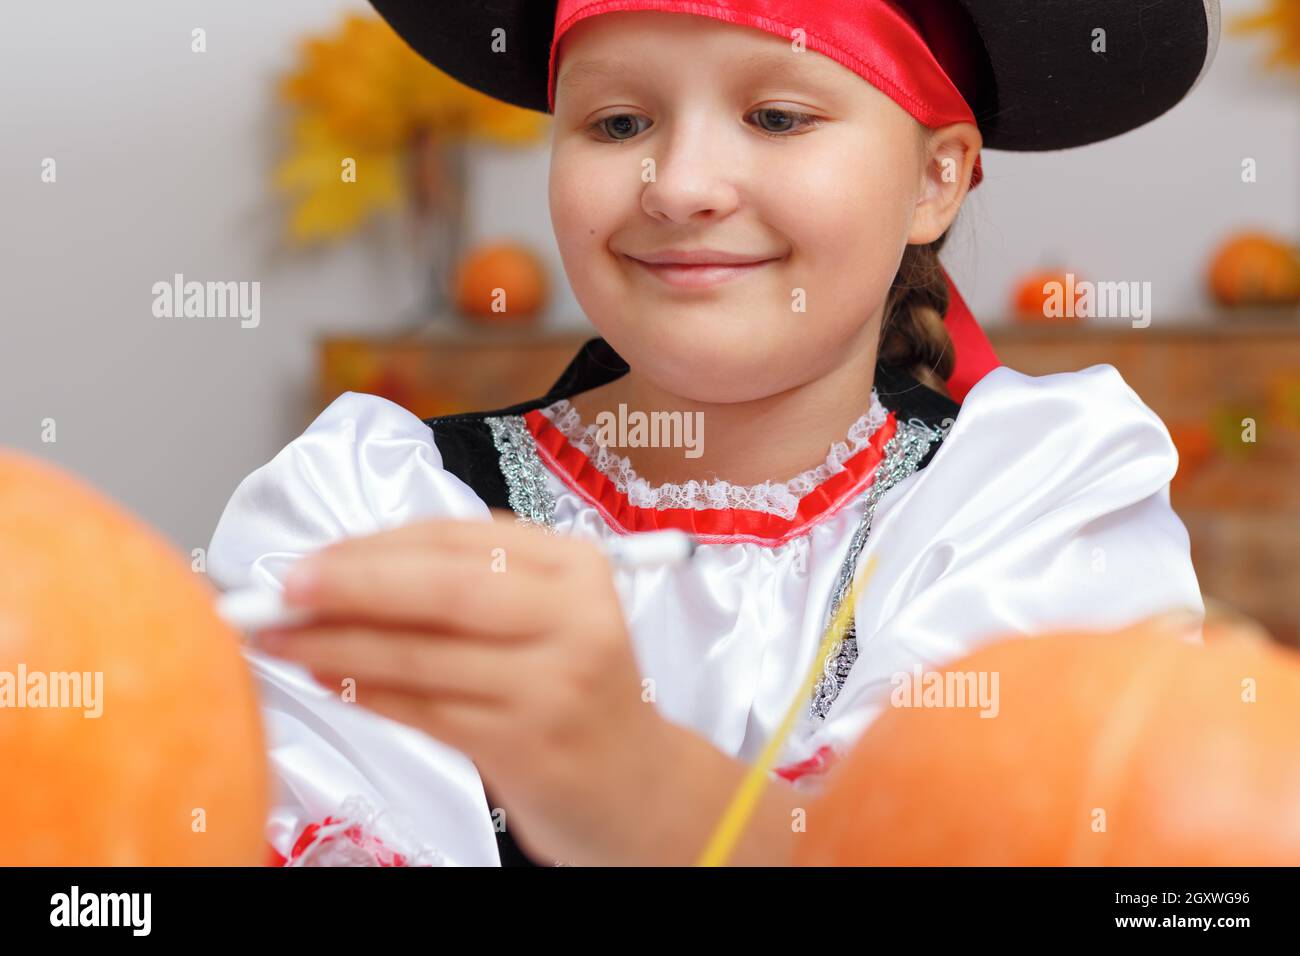 Halloween zu Hause feiern. Nahaufnahme eines kleinen Mädchens, das als Pirat gekleidet ist. Das Kind bereitet sich auf die Party vor und zieht den Kürbis an. Stockfoto